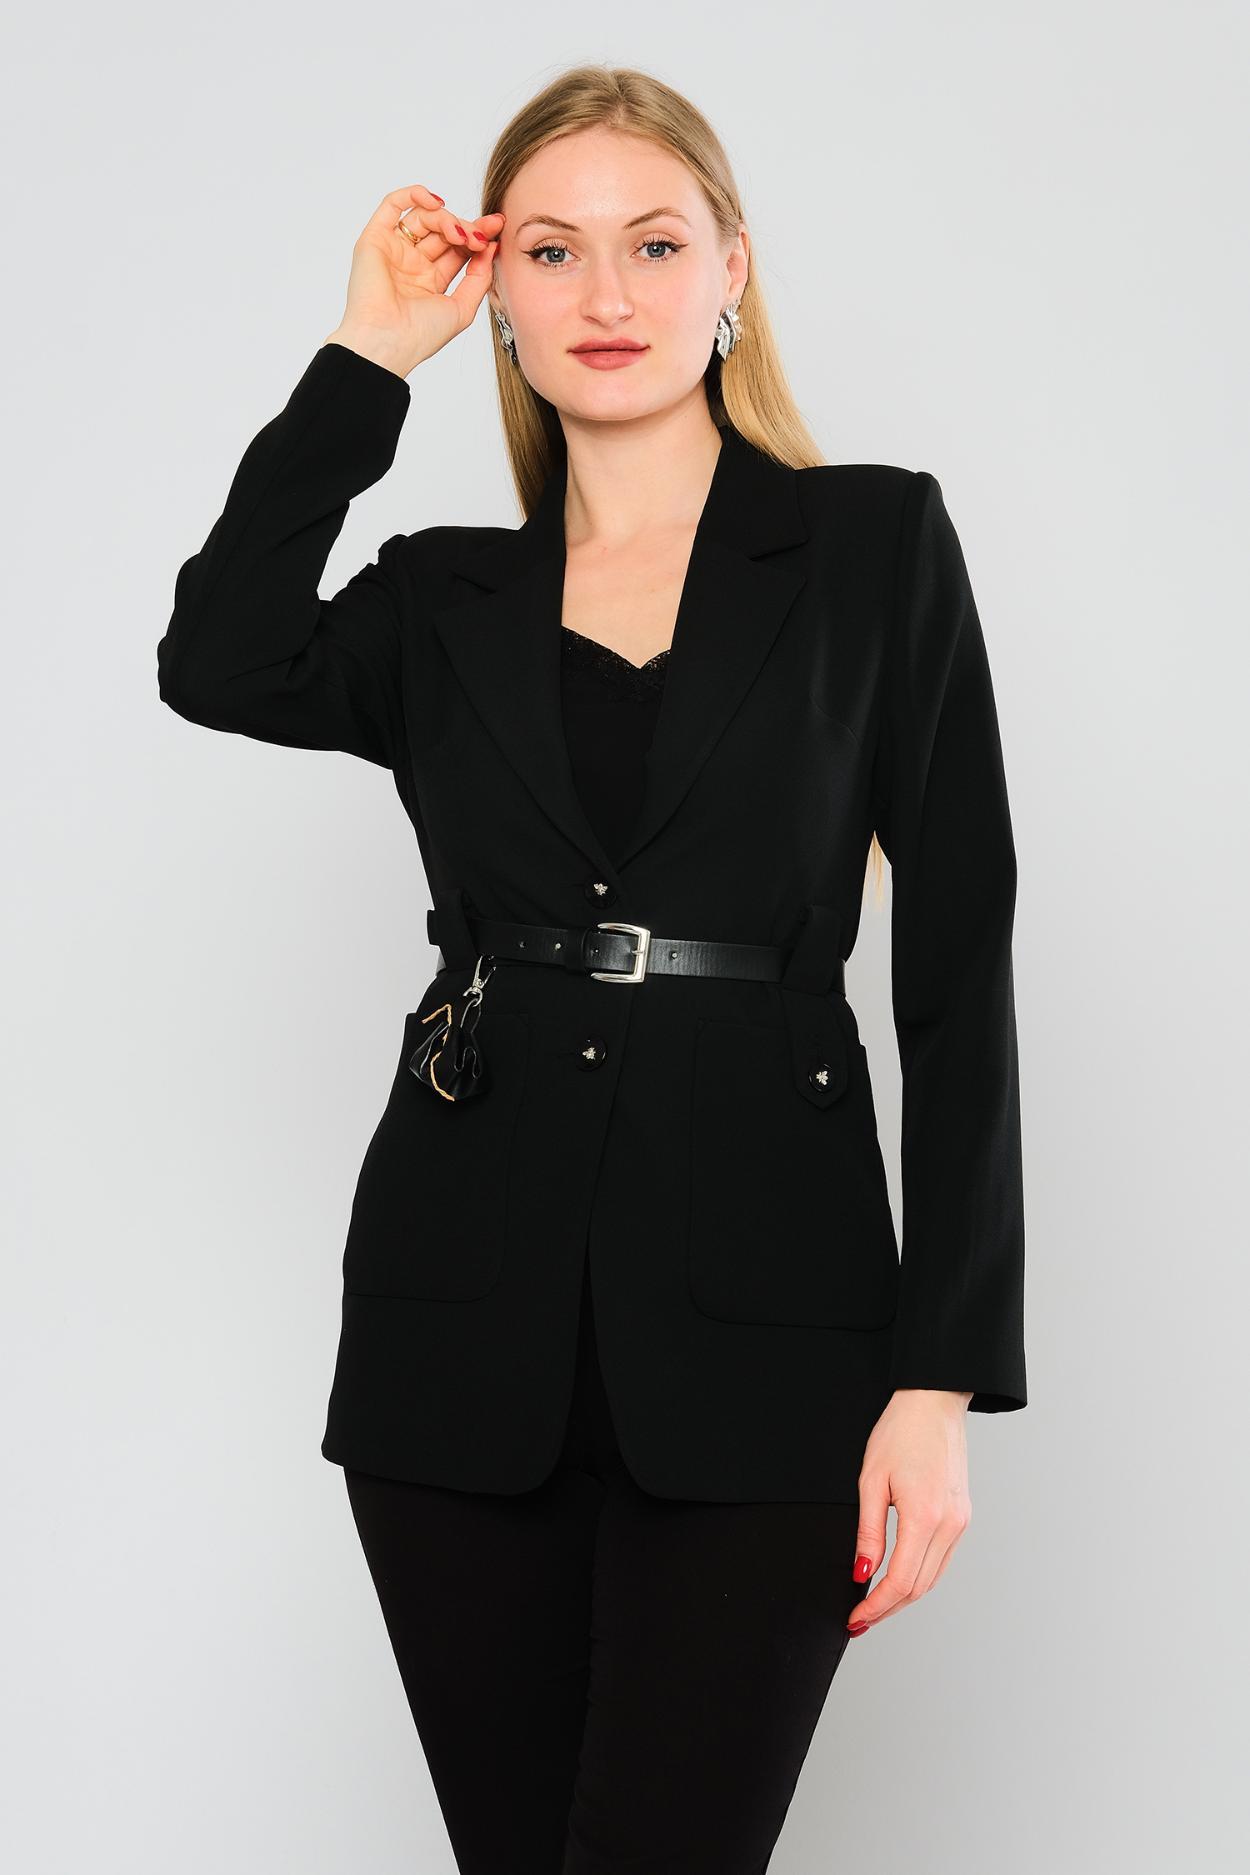 Women's business wear wholesale ladies fashion skirt jacket suits,  wholesale